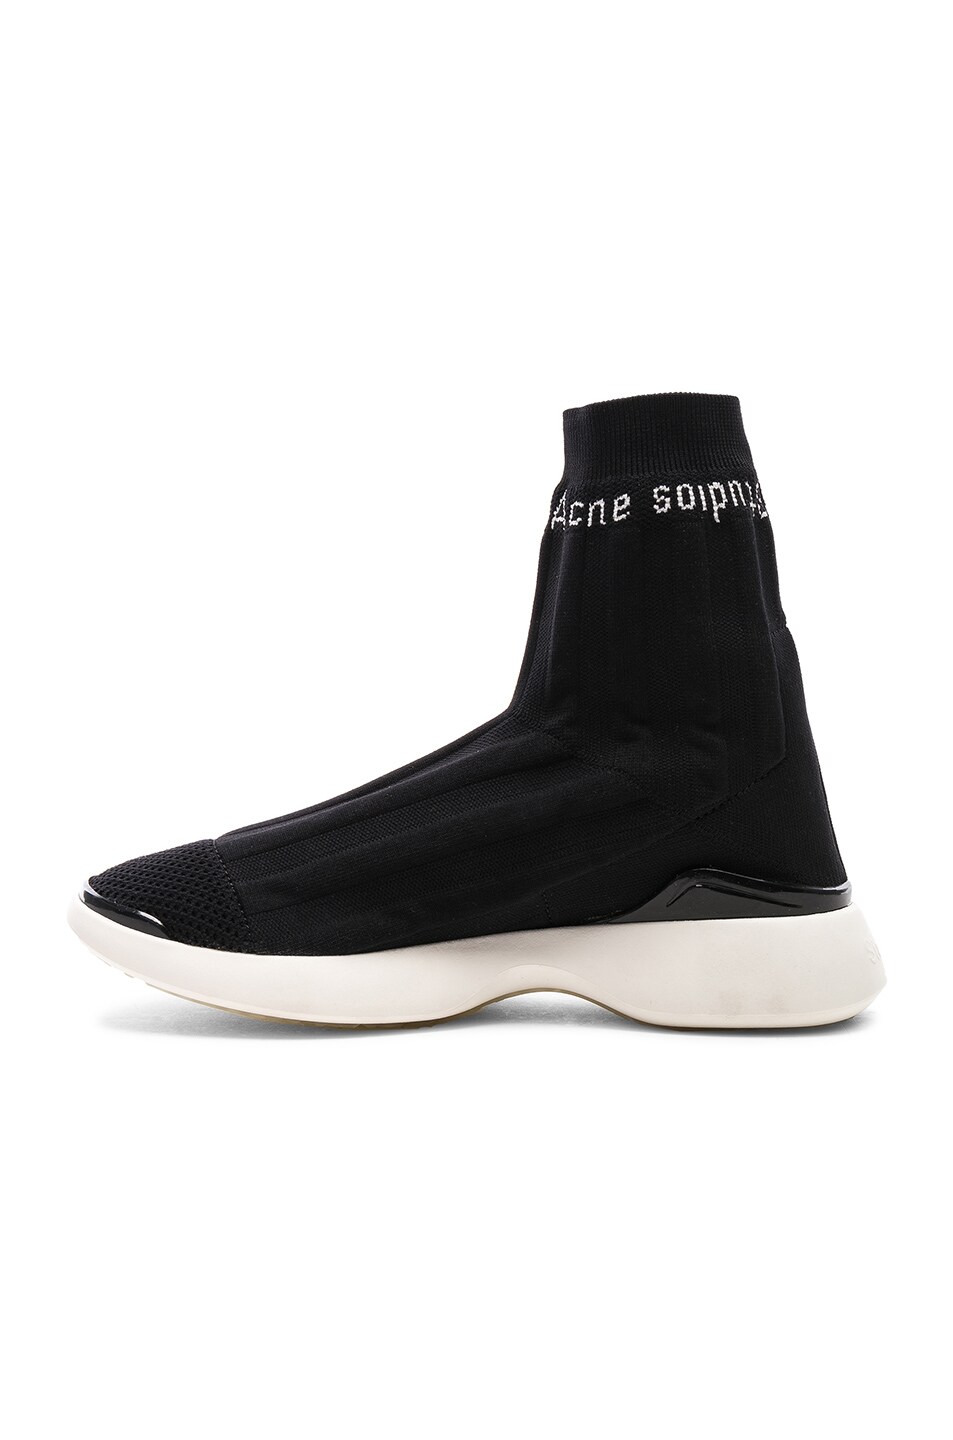 Acne Studios Batilda Sock Sneakers in Black & White | FWRD